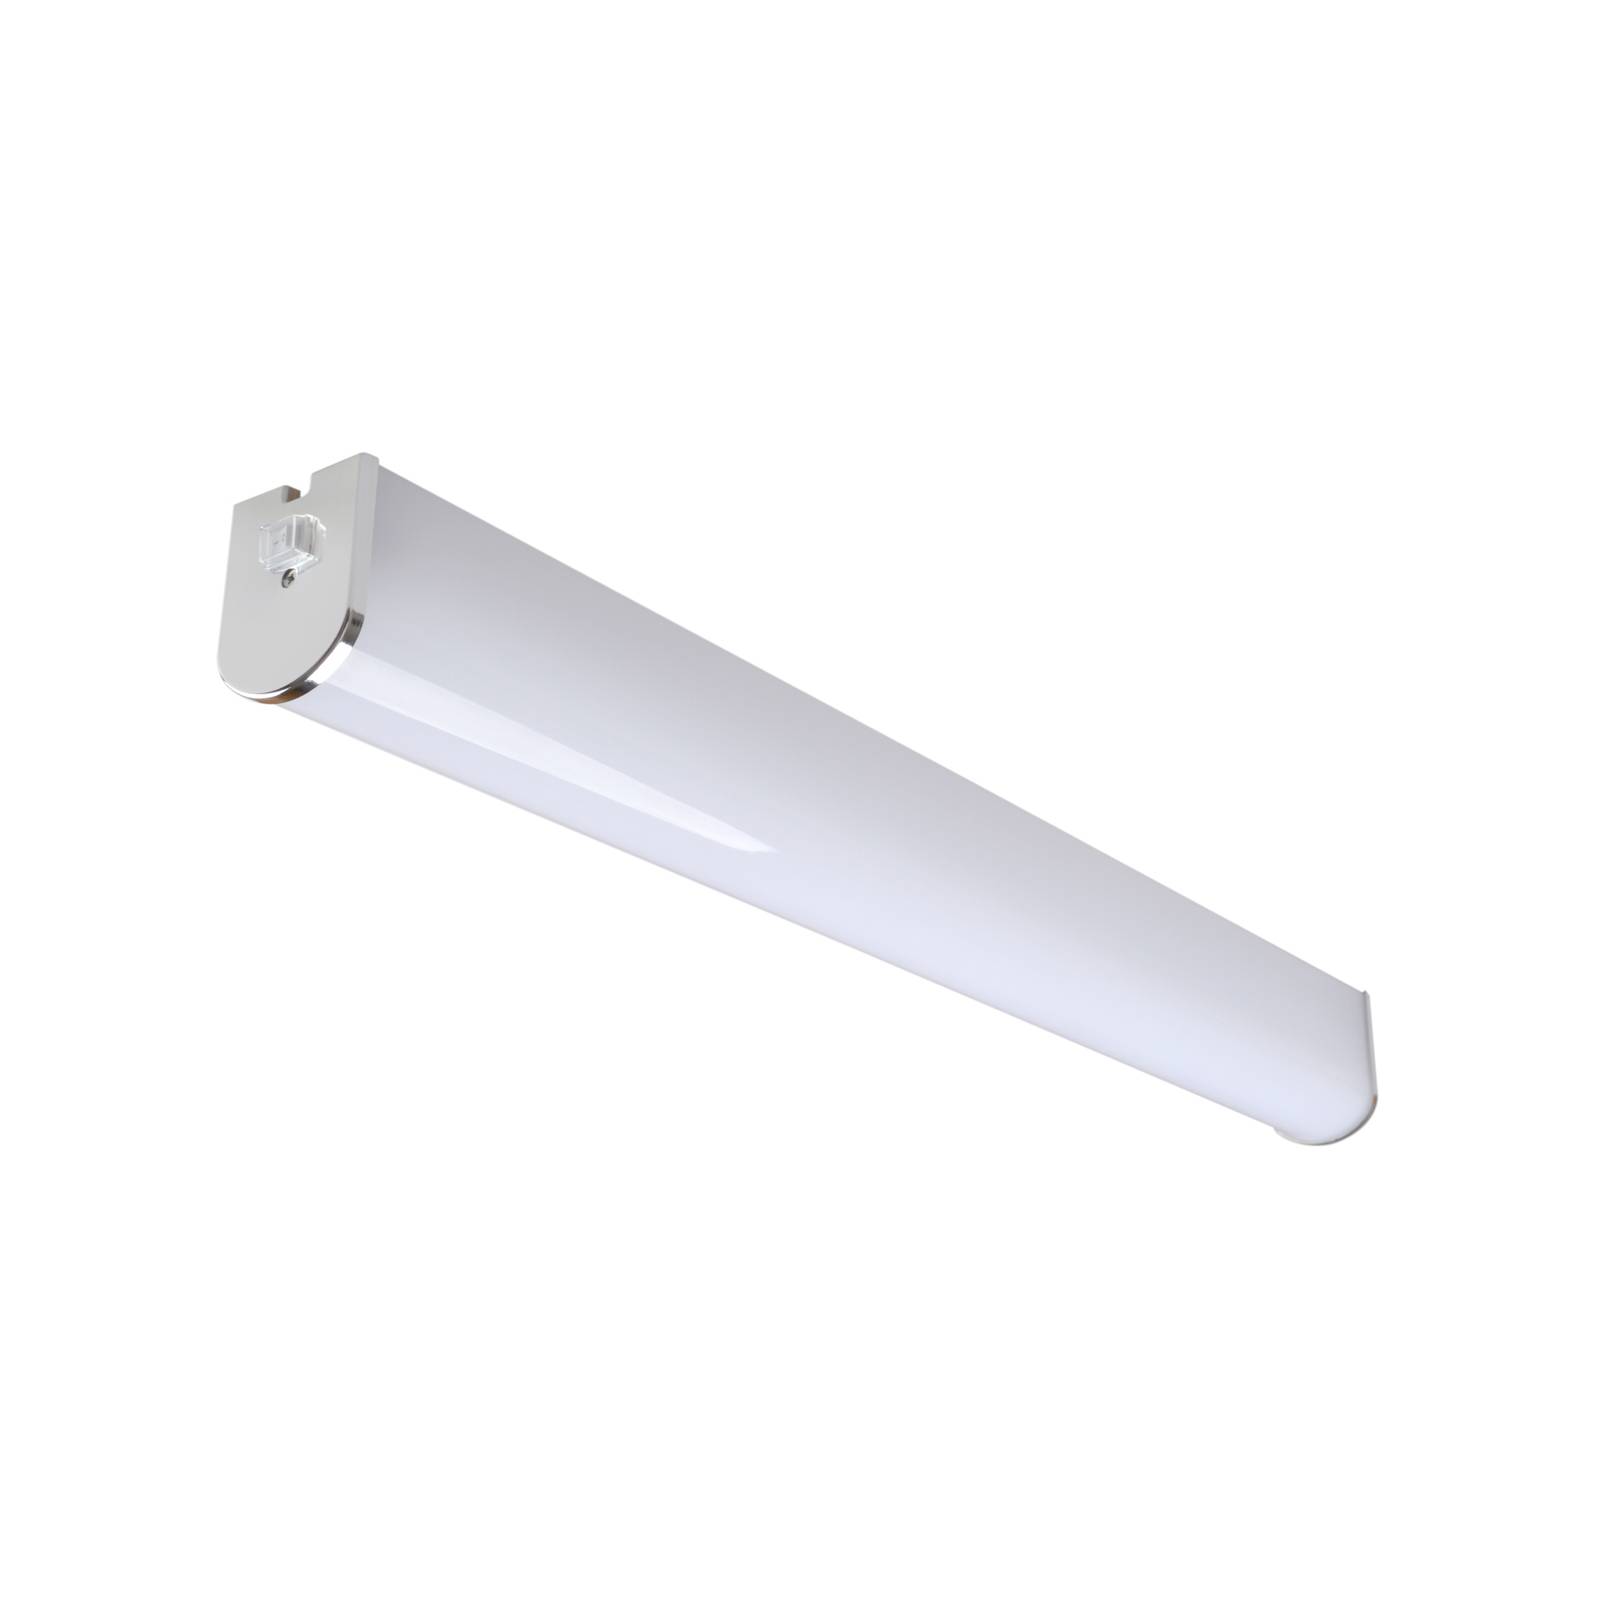 LED fali világítás Lind IP44 4000 K króm/fehér